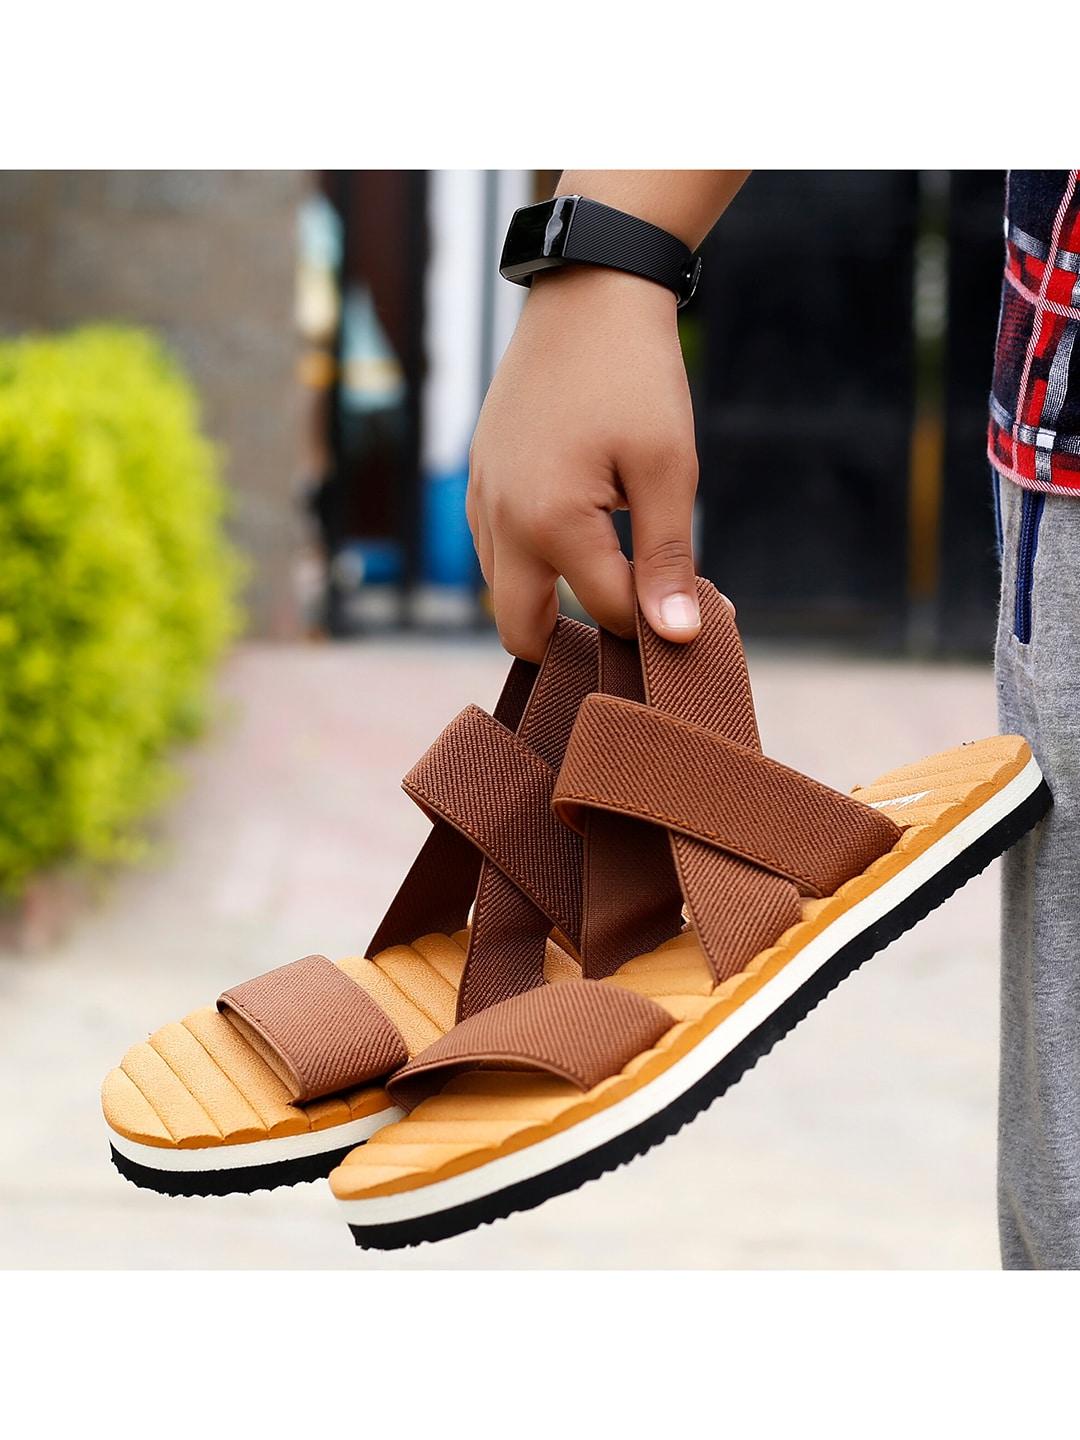 kraasa men orange & brown comfort sandals